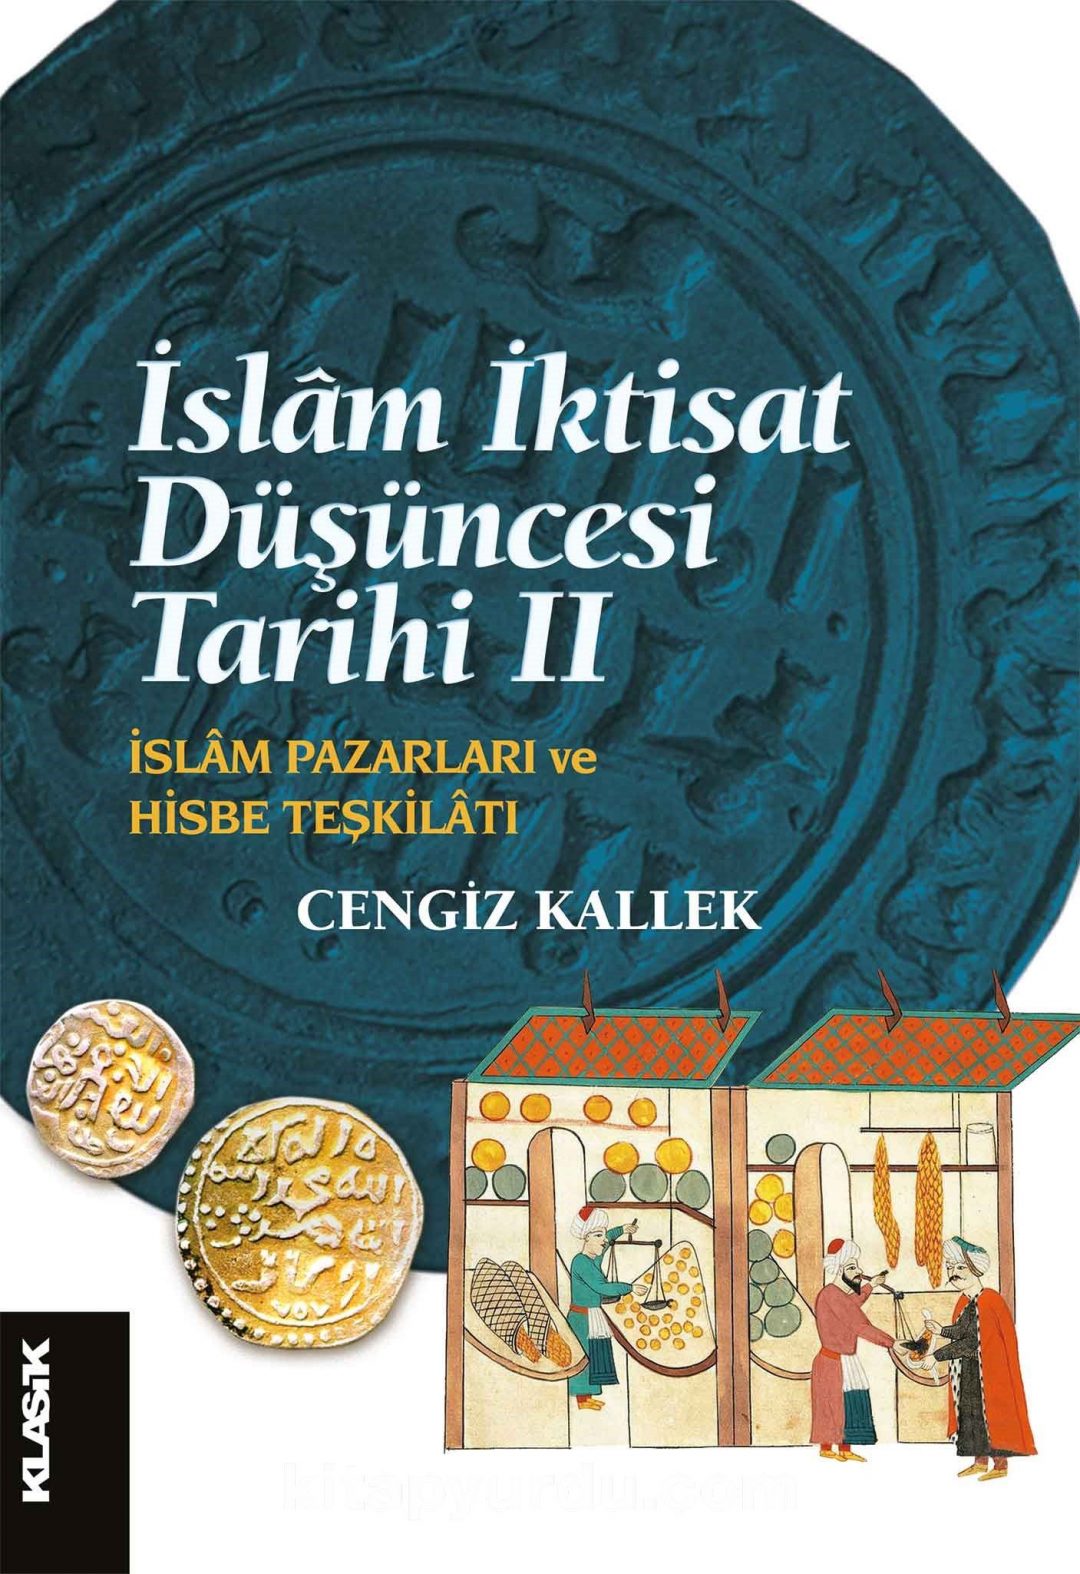 İslam İktisat Düşüncesi Tarihi 2 & İslam Pazarları ve Hisbe Teşkilatı